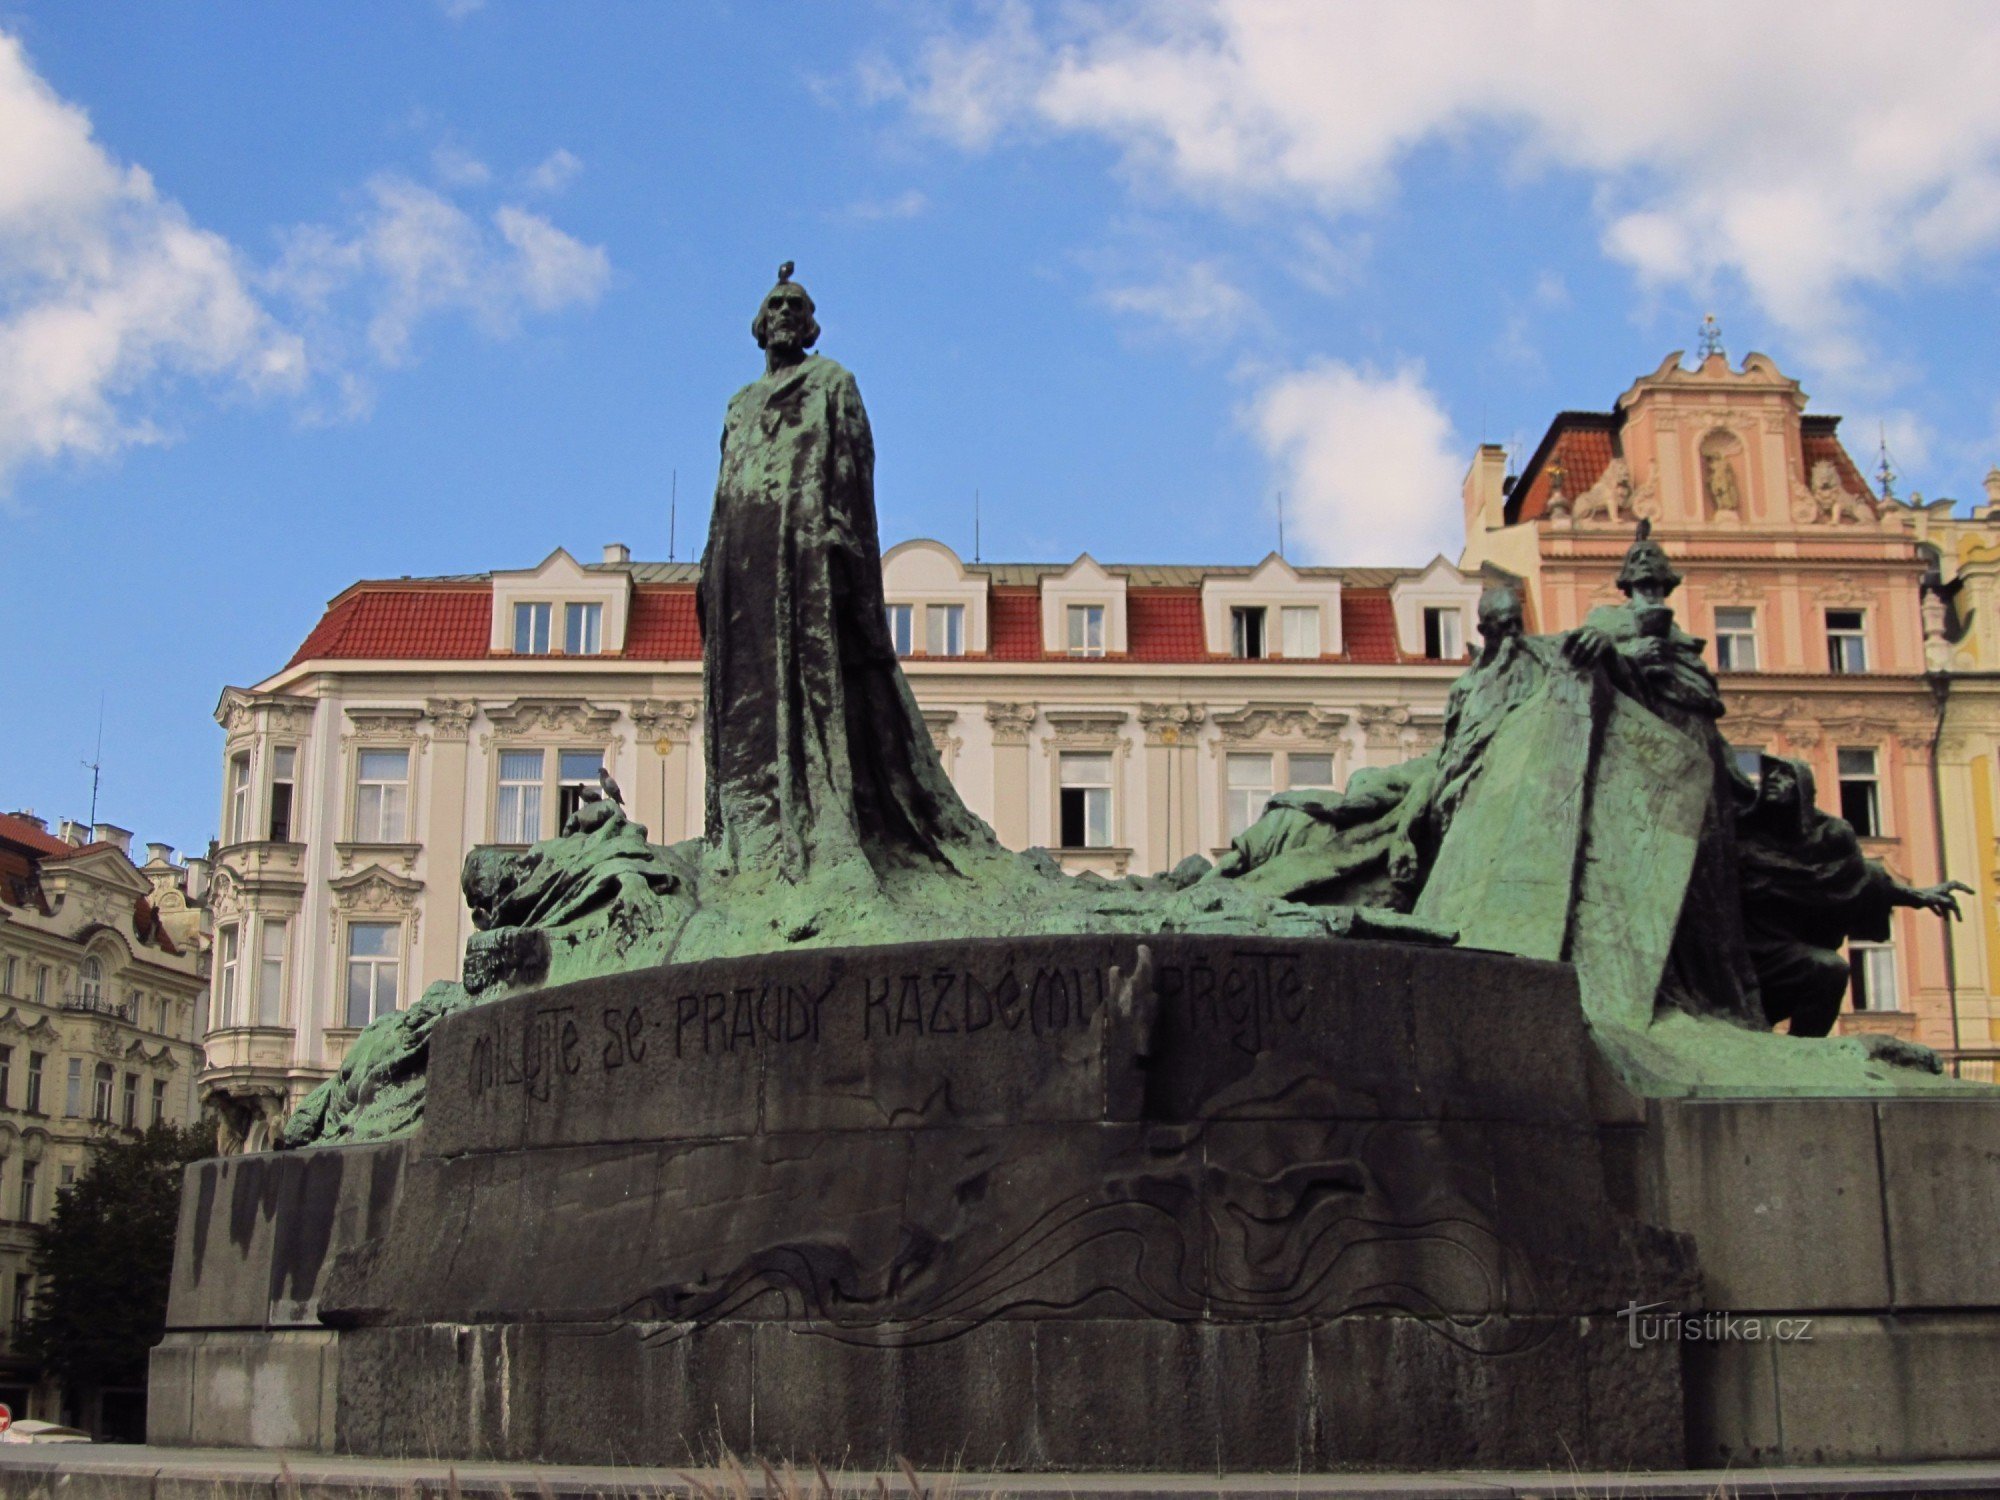 Mestari Jan Husin muistomerkki Prahan vanhankaupungin aukiolla